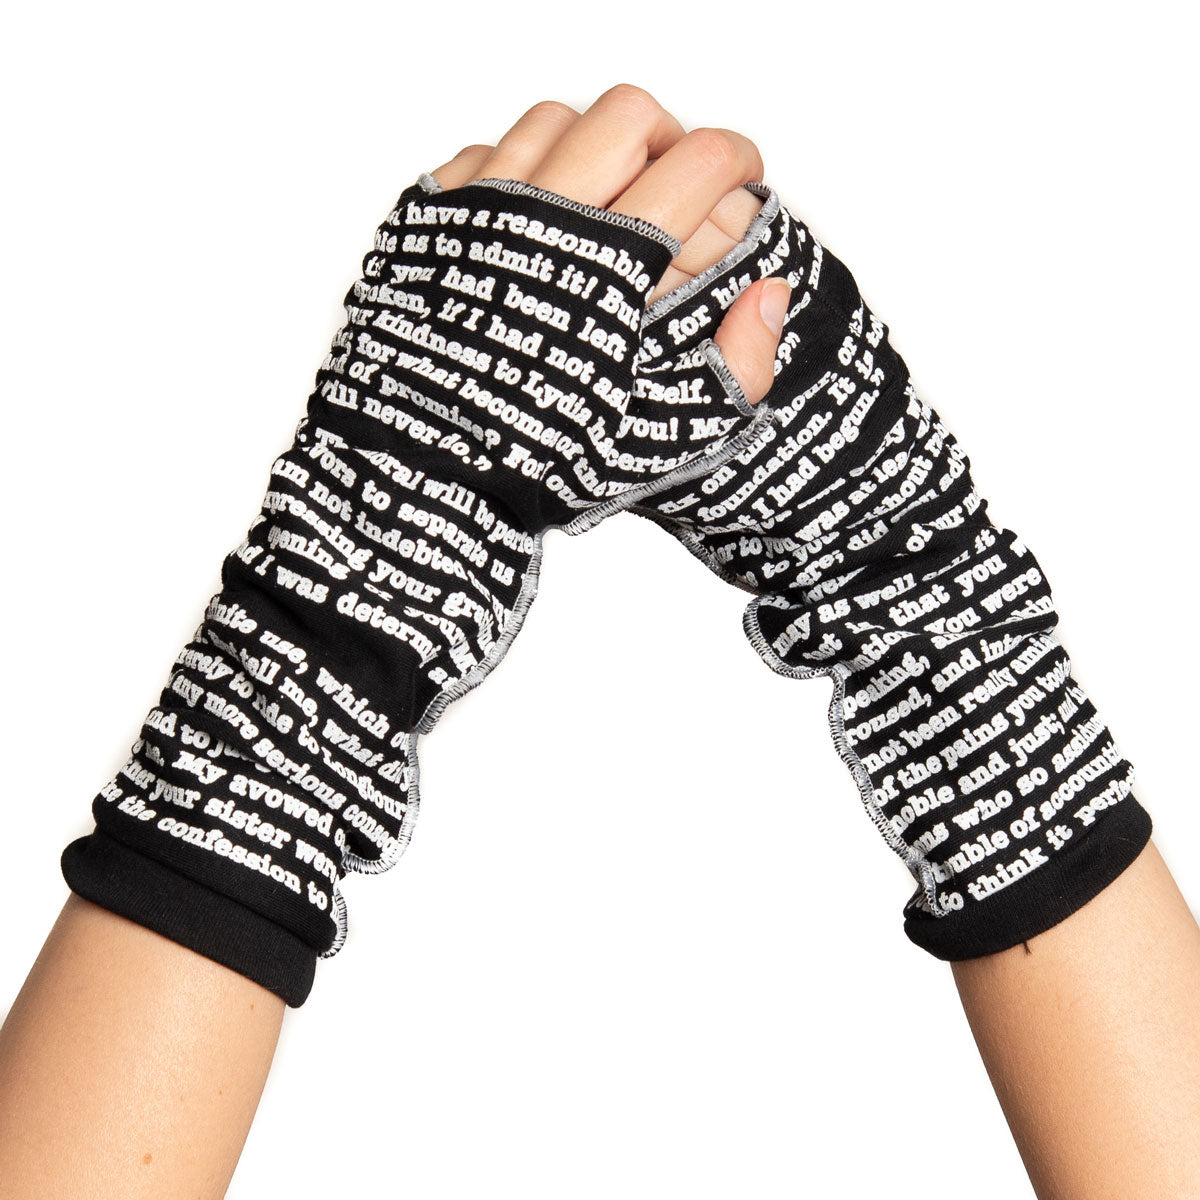 Pride and Prejudice Fingerless Writing Gloves – Go Gift'em